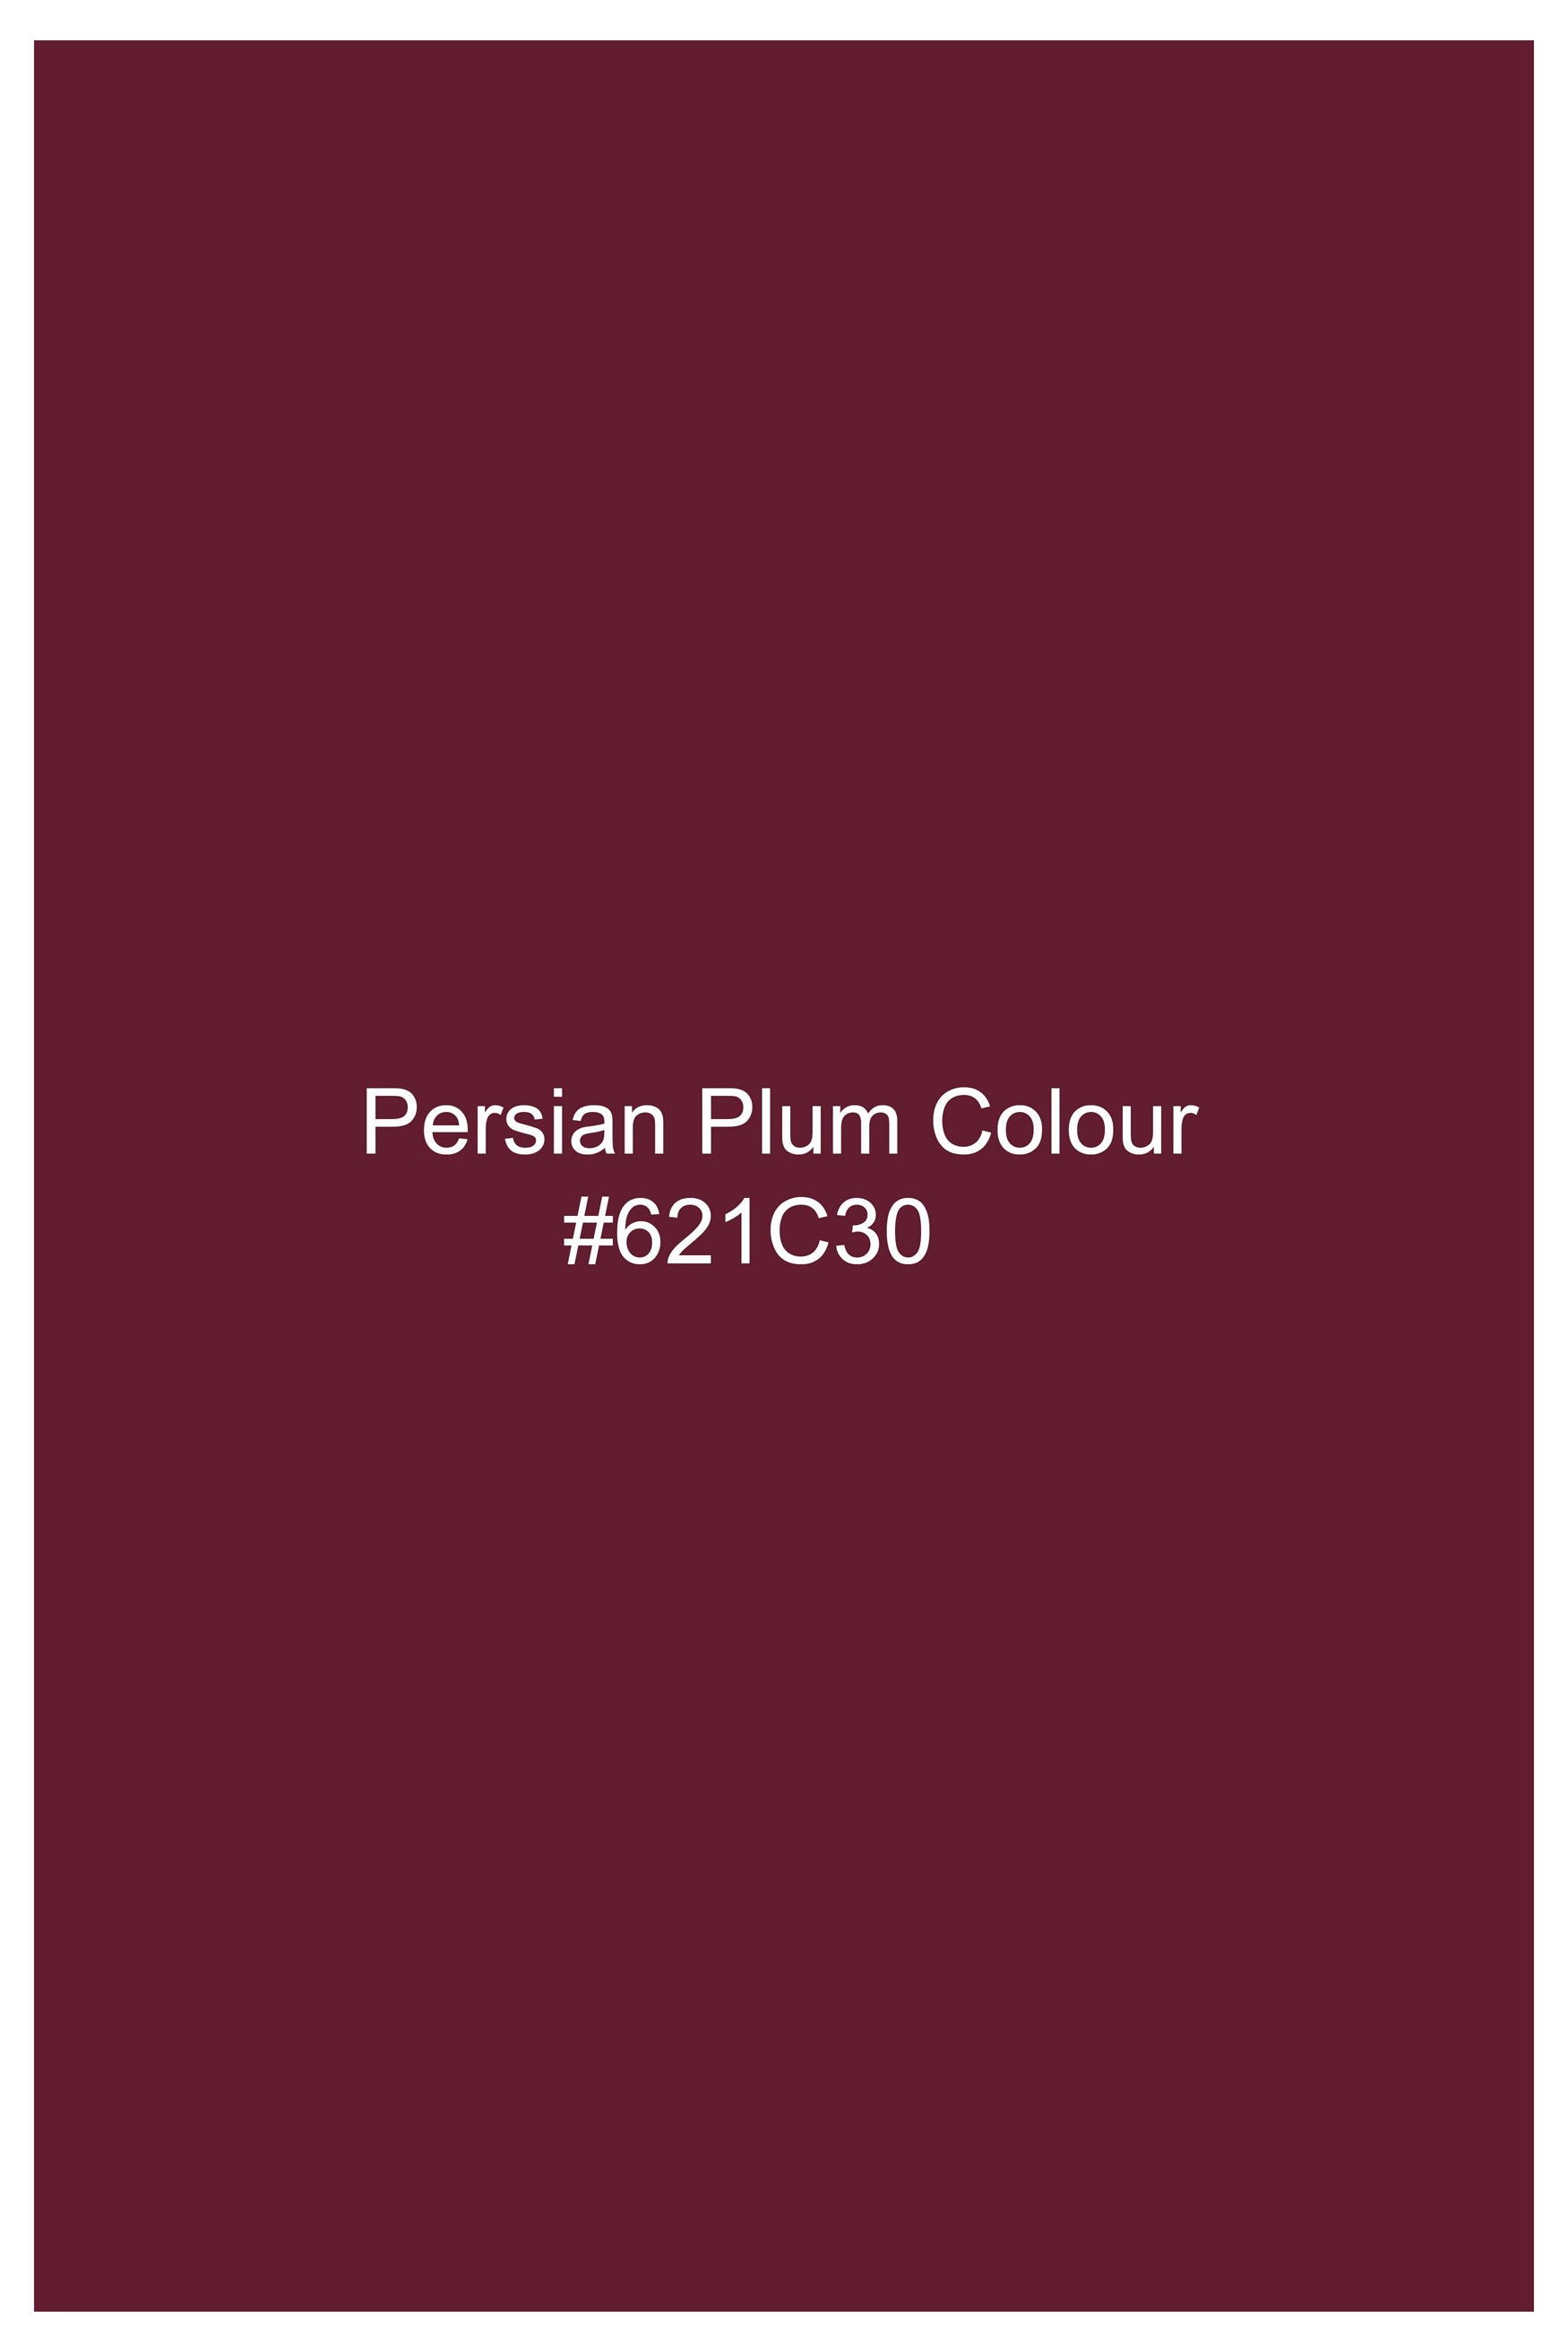 Persian Plum Vertical Kutch Work Patches with Mirror Work Subtle Sheen Super Soft Premium Cotton Designer Kurta Set